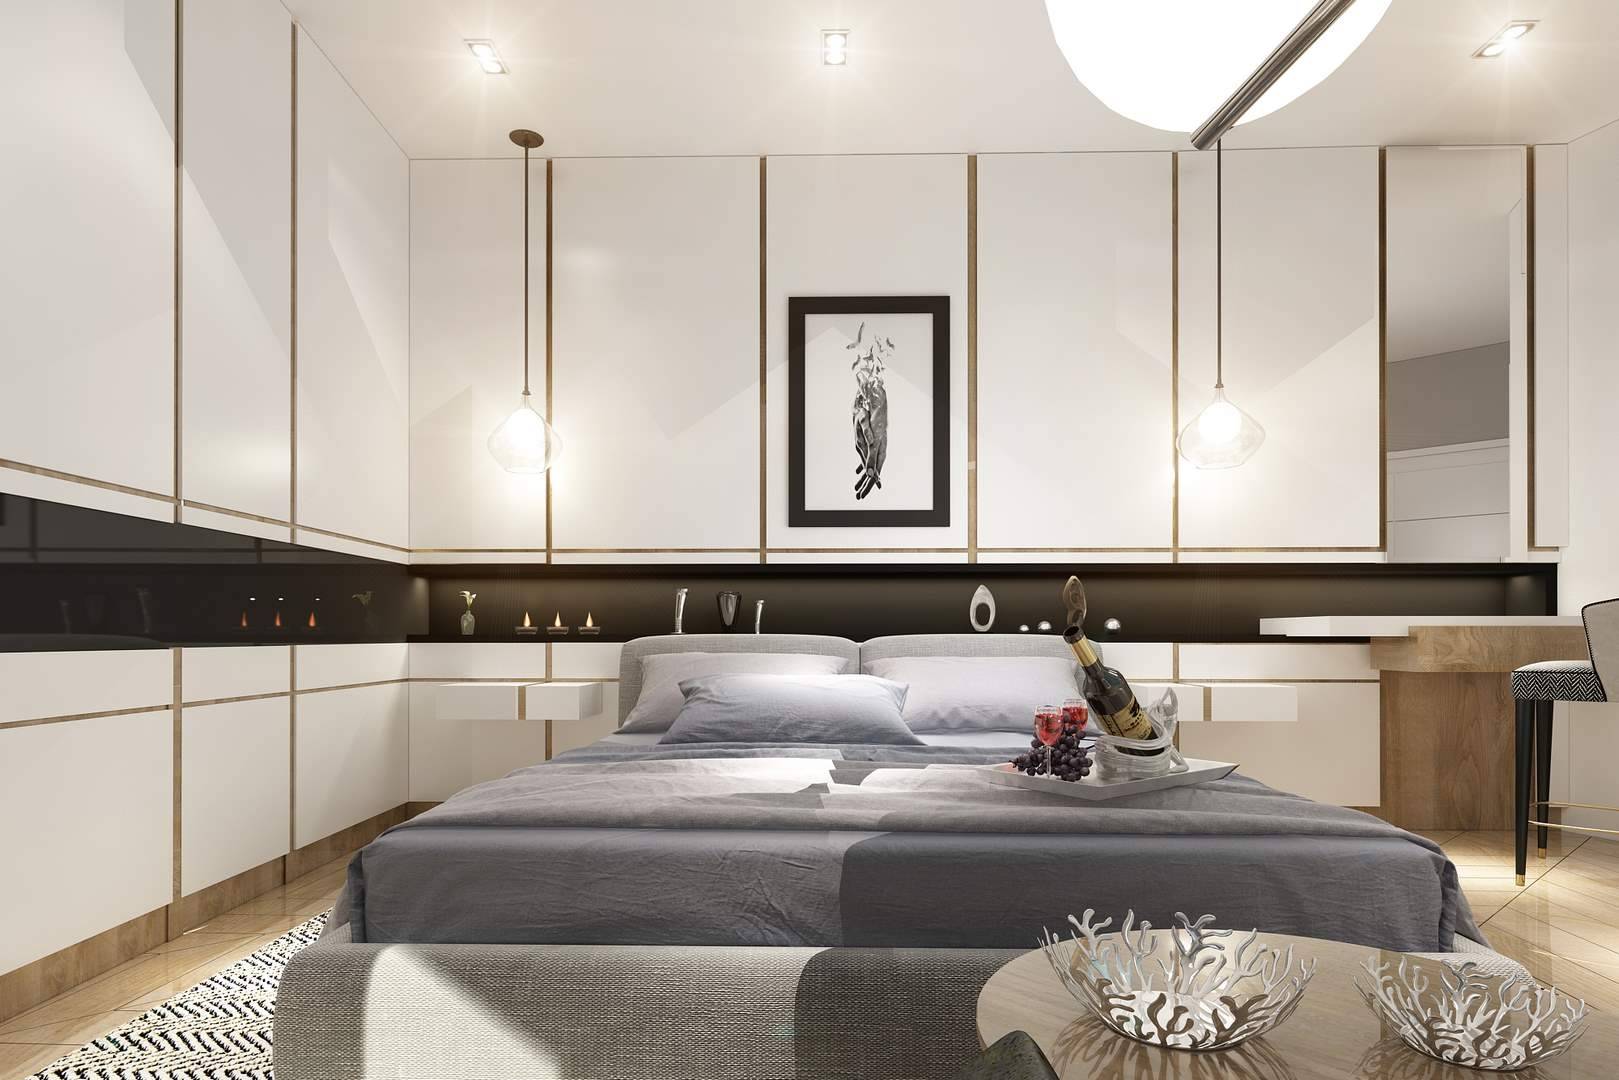 Kartal Marina Residence yatak odası iç mimar tasarımı